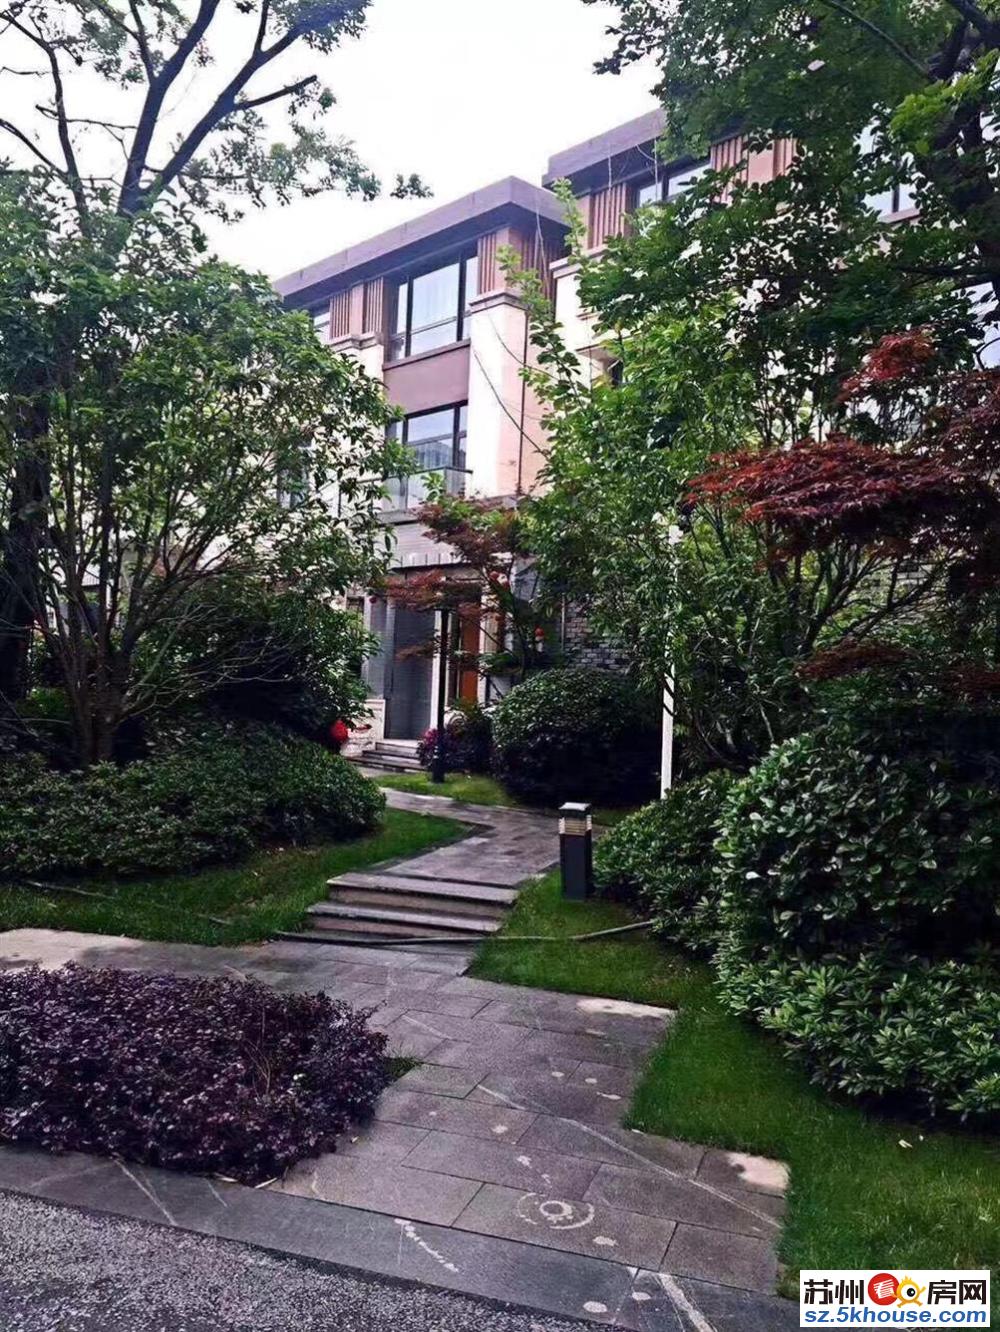 苏式园林大宅 书香门第 南北双庭院 拥有您的私人宅院